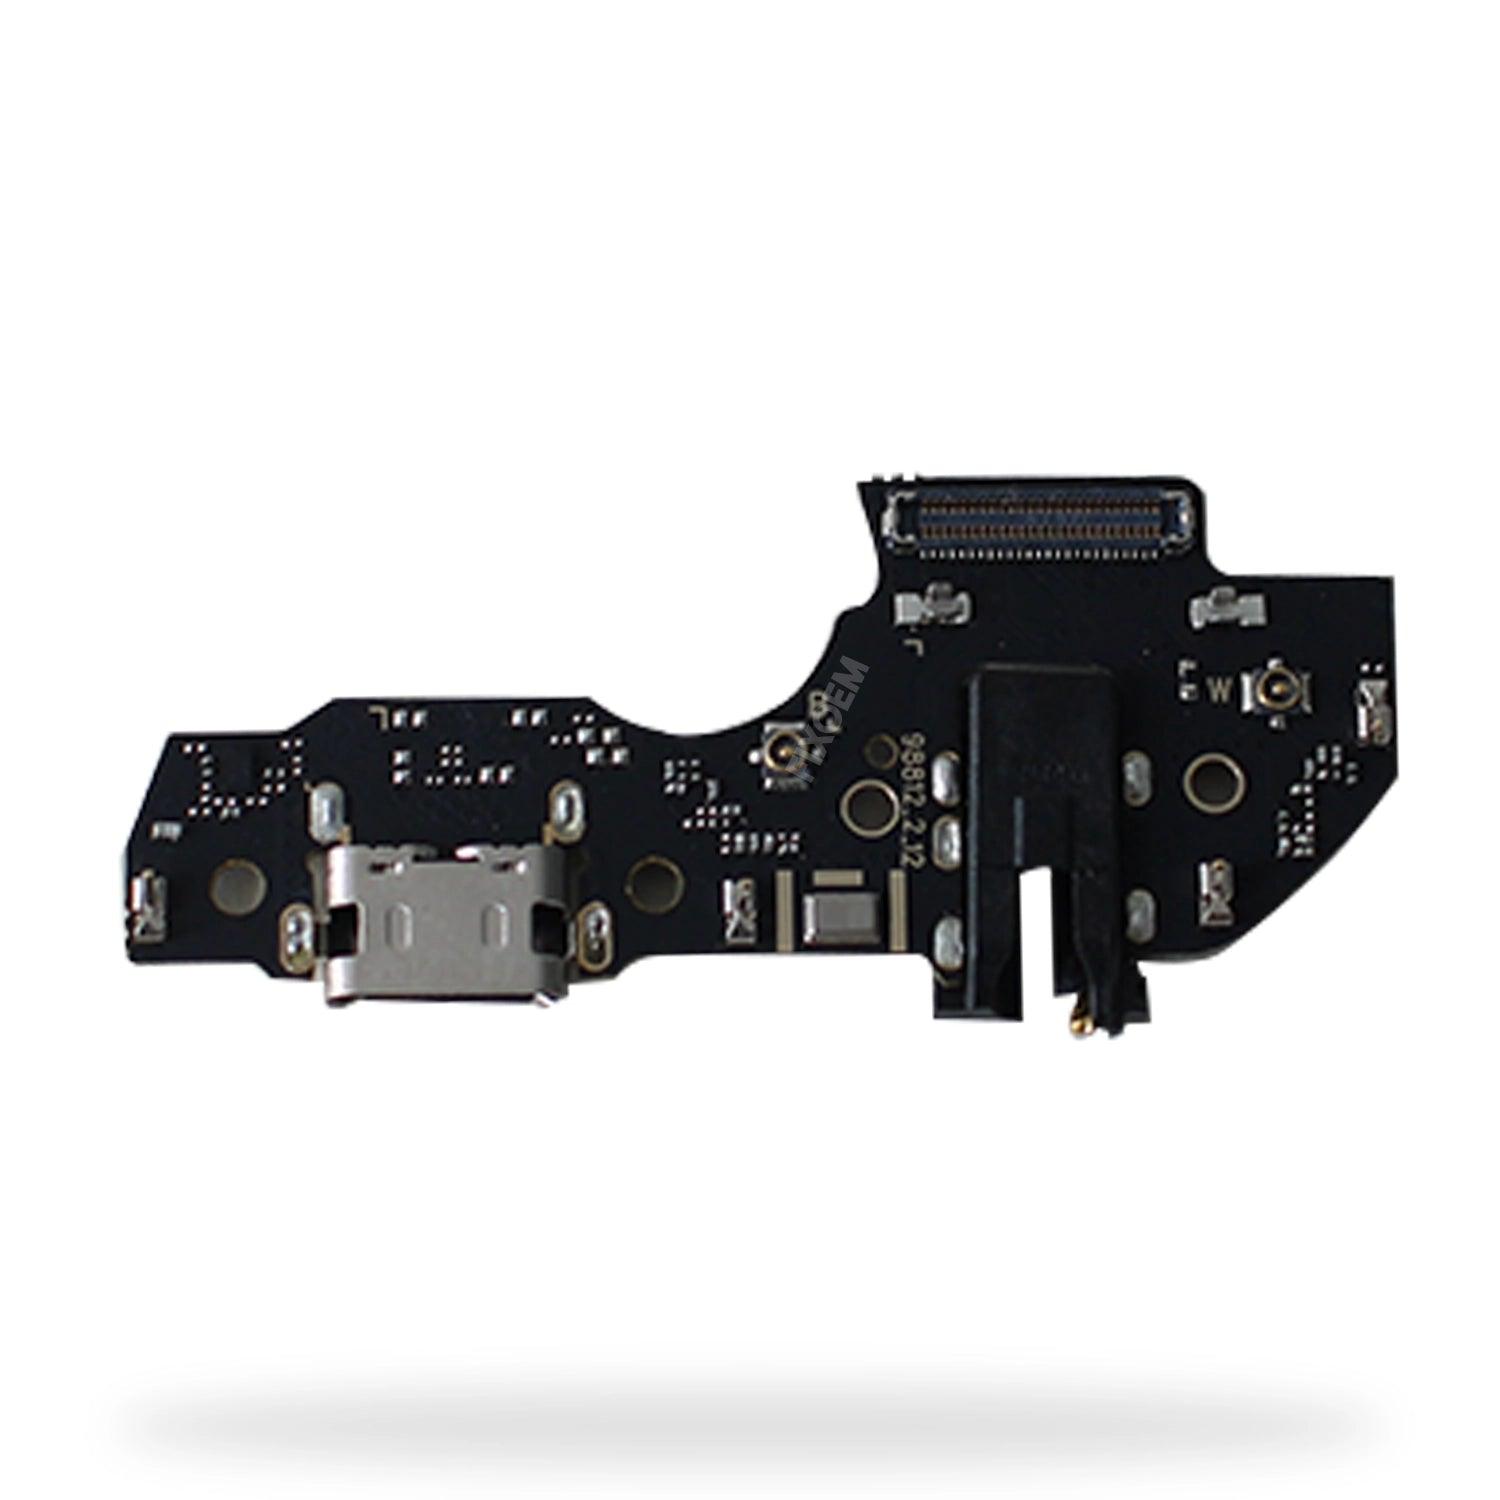 Centro Carga Moto G50 5G XT2143 a solo $ 90.00 Refaccion y puestos celulares, refurbish y microelectronica.- FixOEM